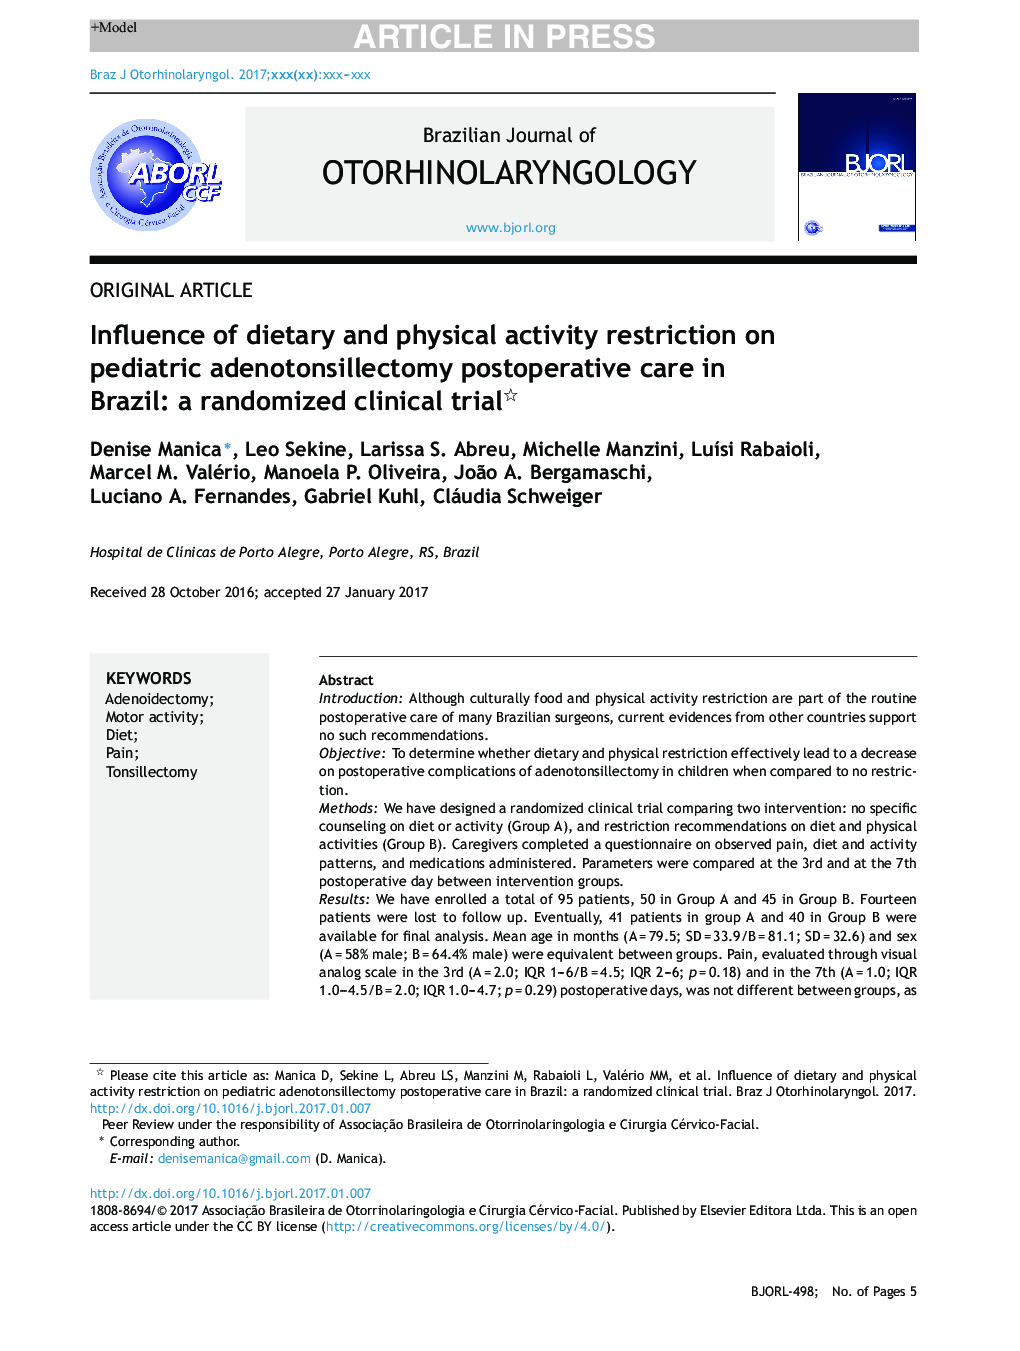 تأثیر محدودیت غذا و فعالیت بدنی در مراقبت بعد از عمل آدنوتانسیل سلکتومی کودکان در برزیل: یک کارآزمایی بالینی تصادفی 